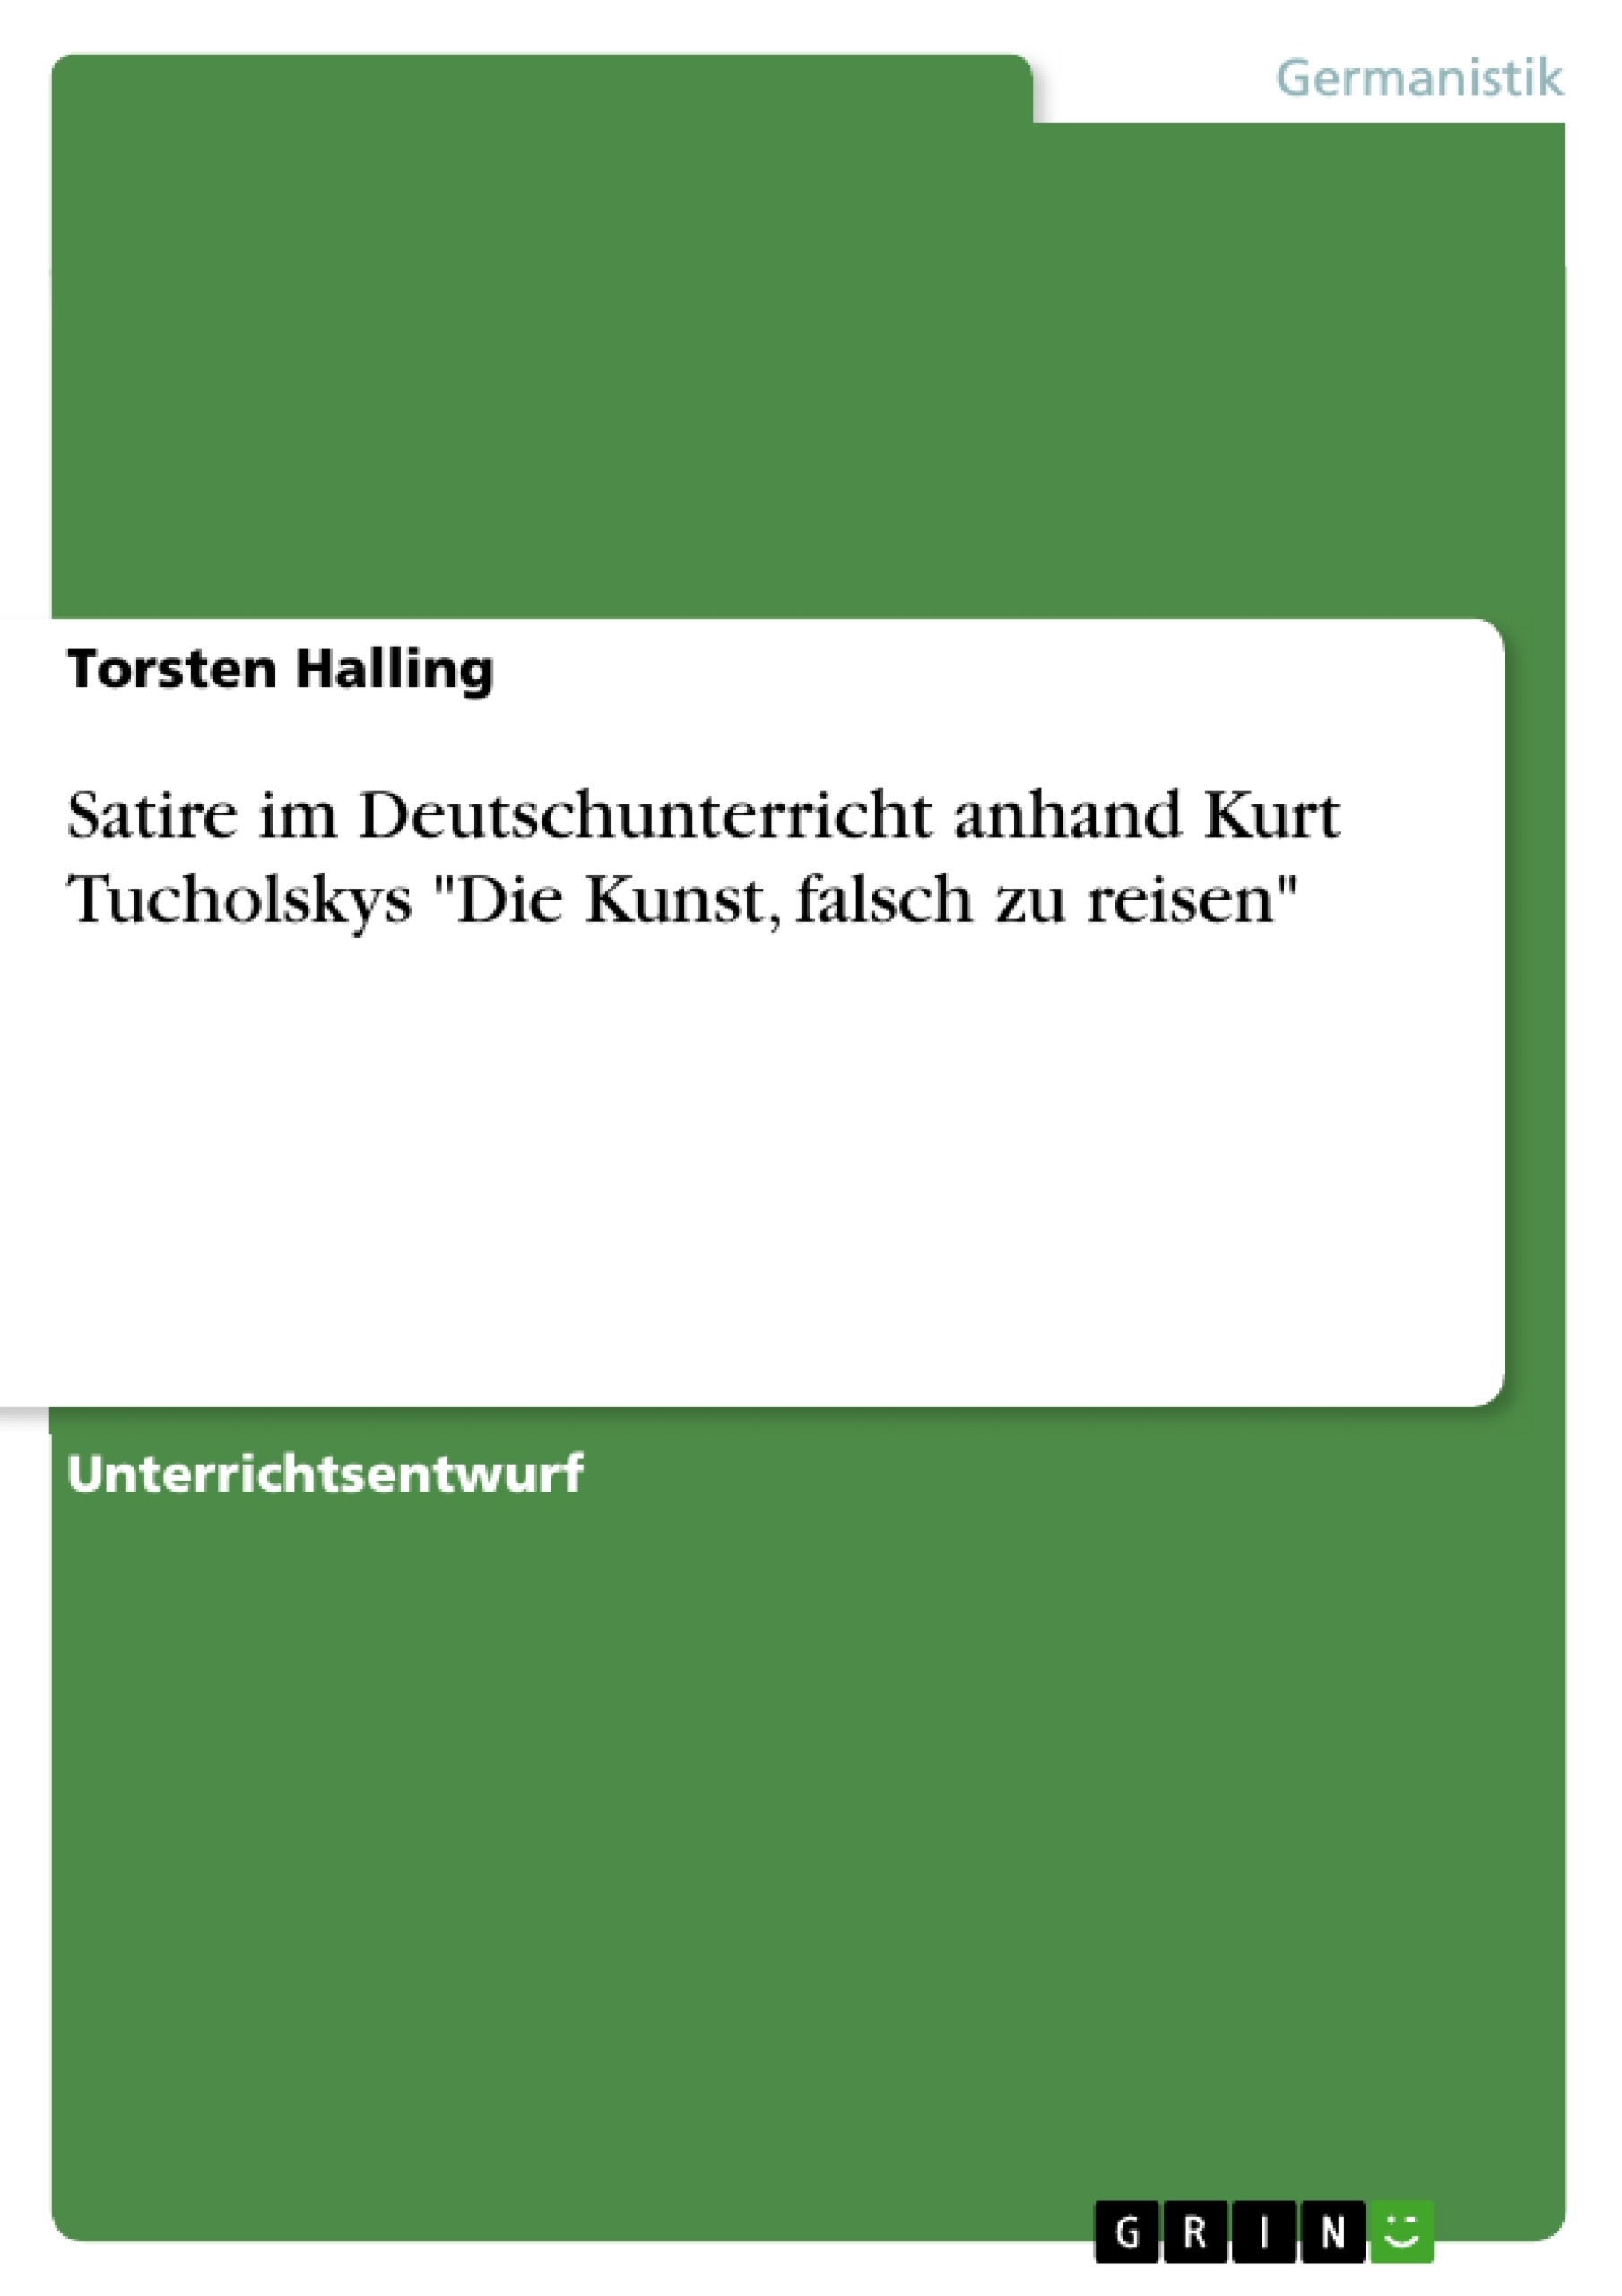 Titre: Satire im Deutschunterricht anhand Kurt Tucholskys "Die Kunst, falsch zu reisen"